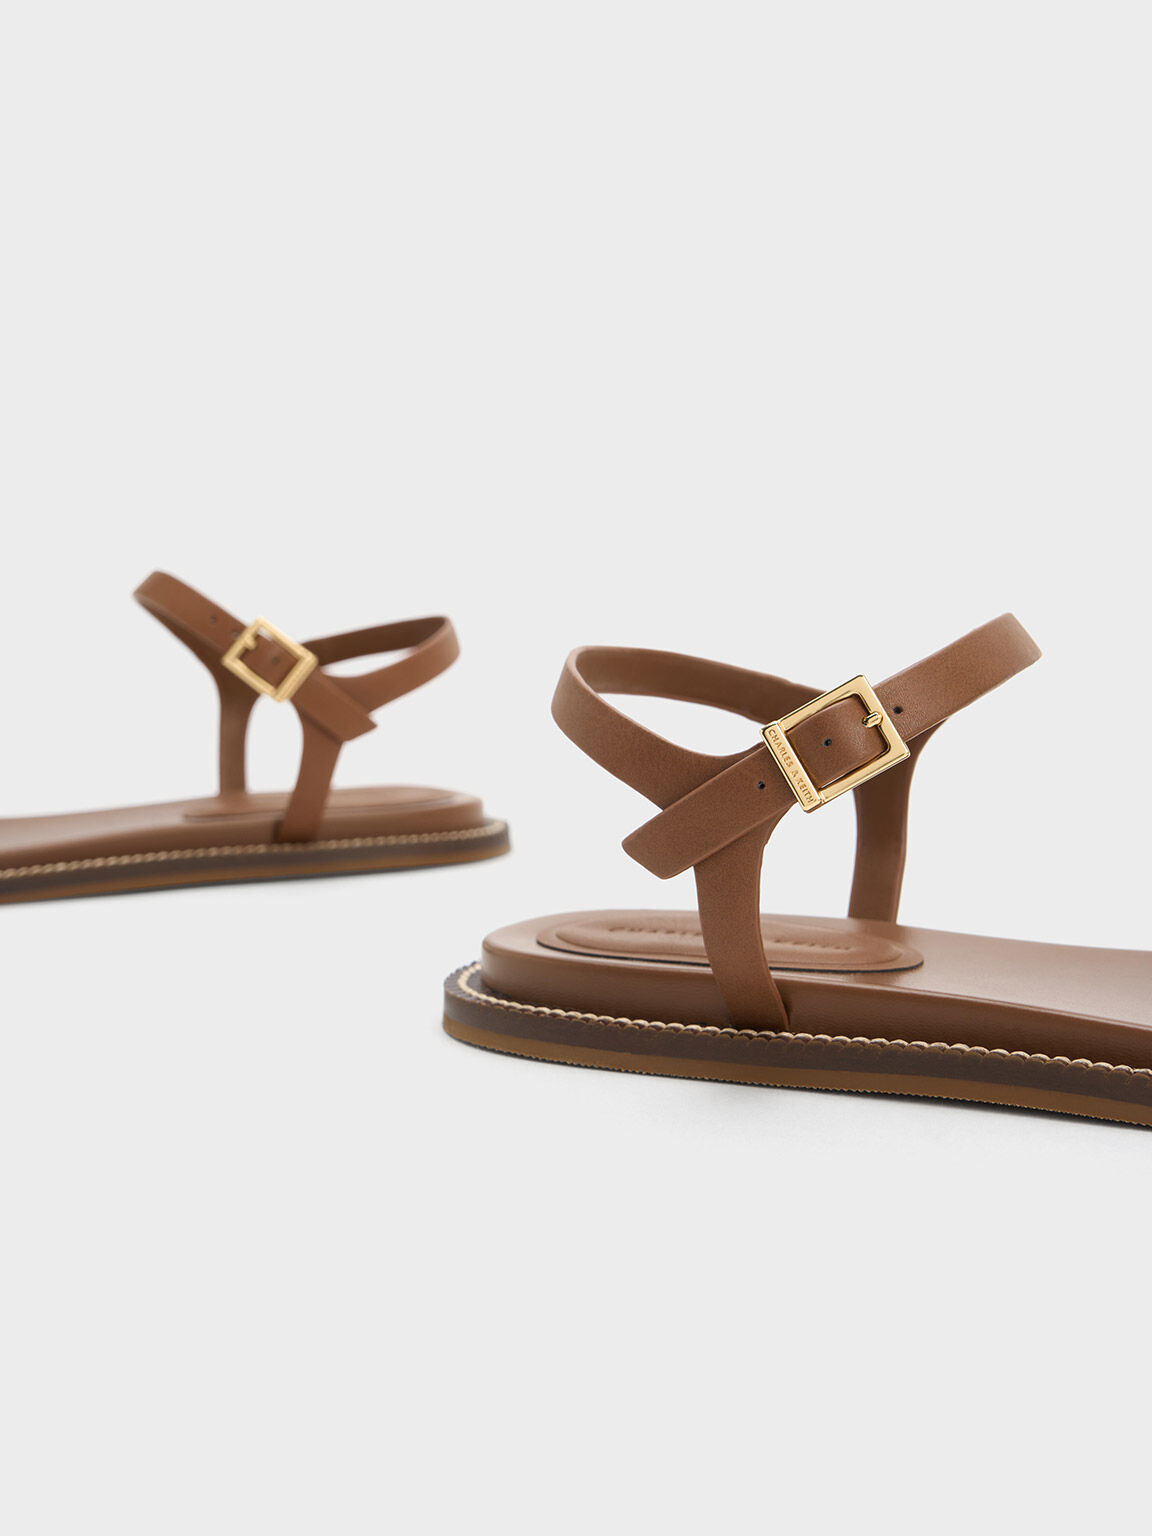 Buy Cork Thong Sandals for Men Online - Neemans